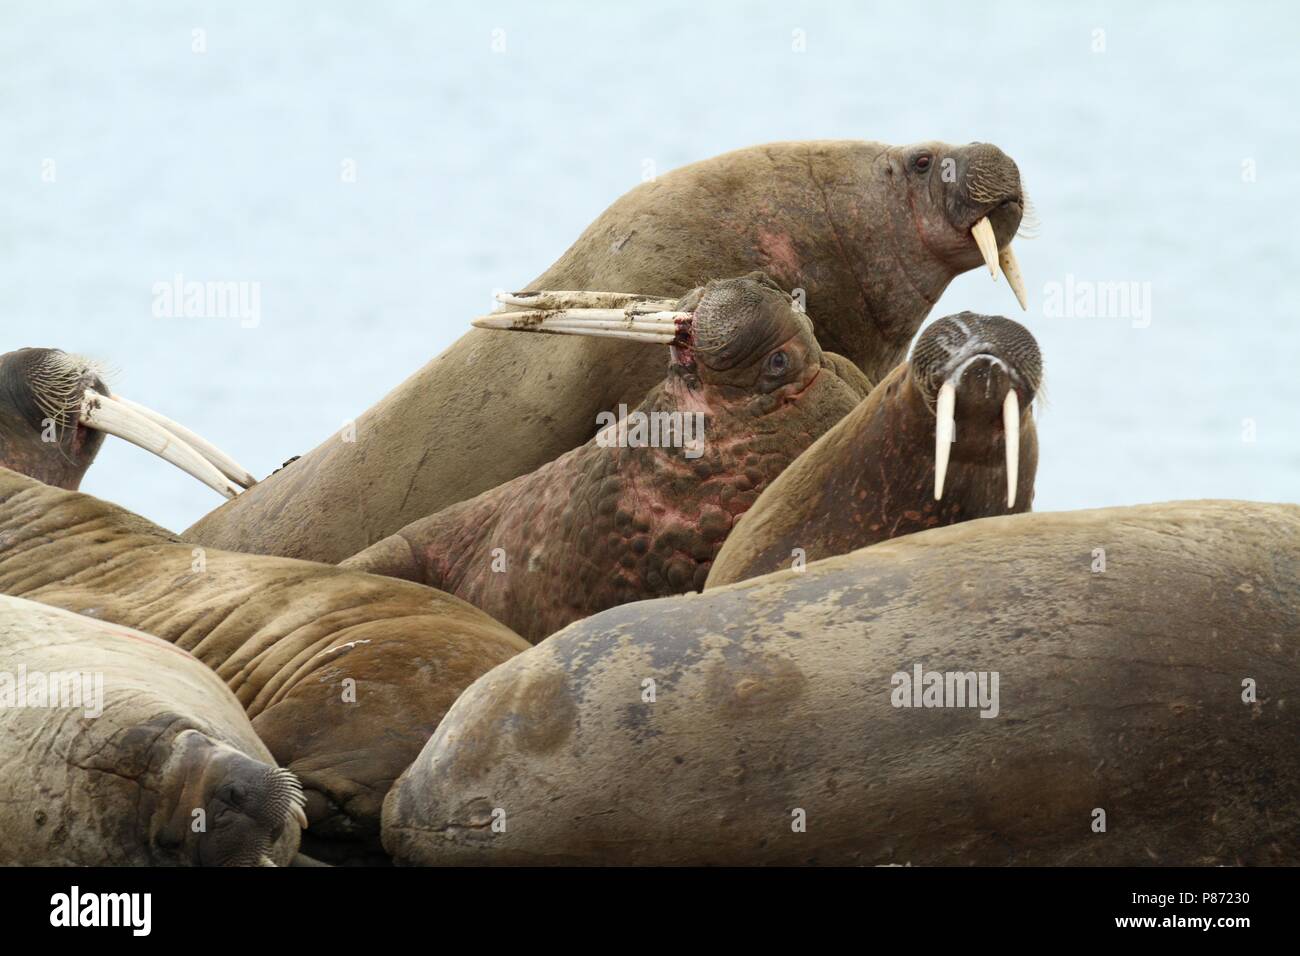 Groep Walrussen op de Kust; Gruppe von Walruss's am Ufer Stockfoto